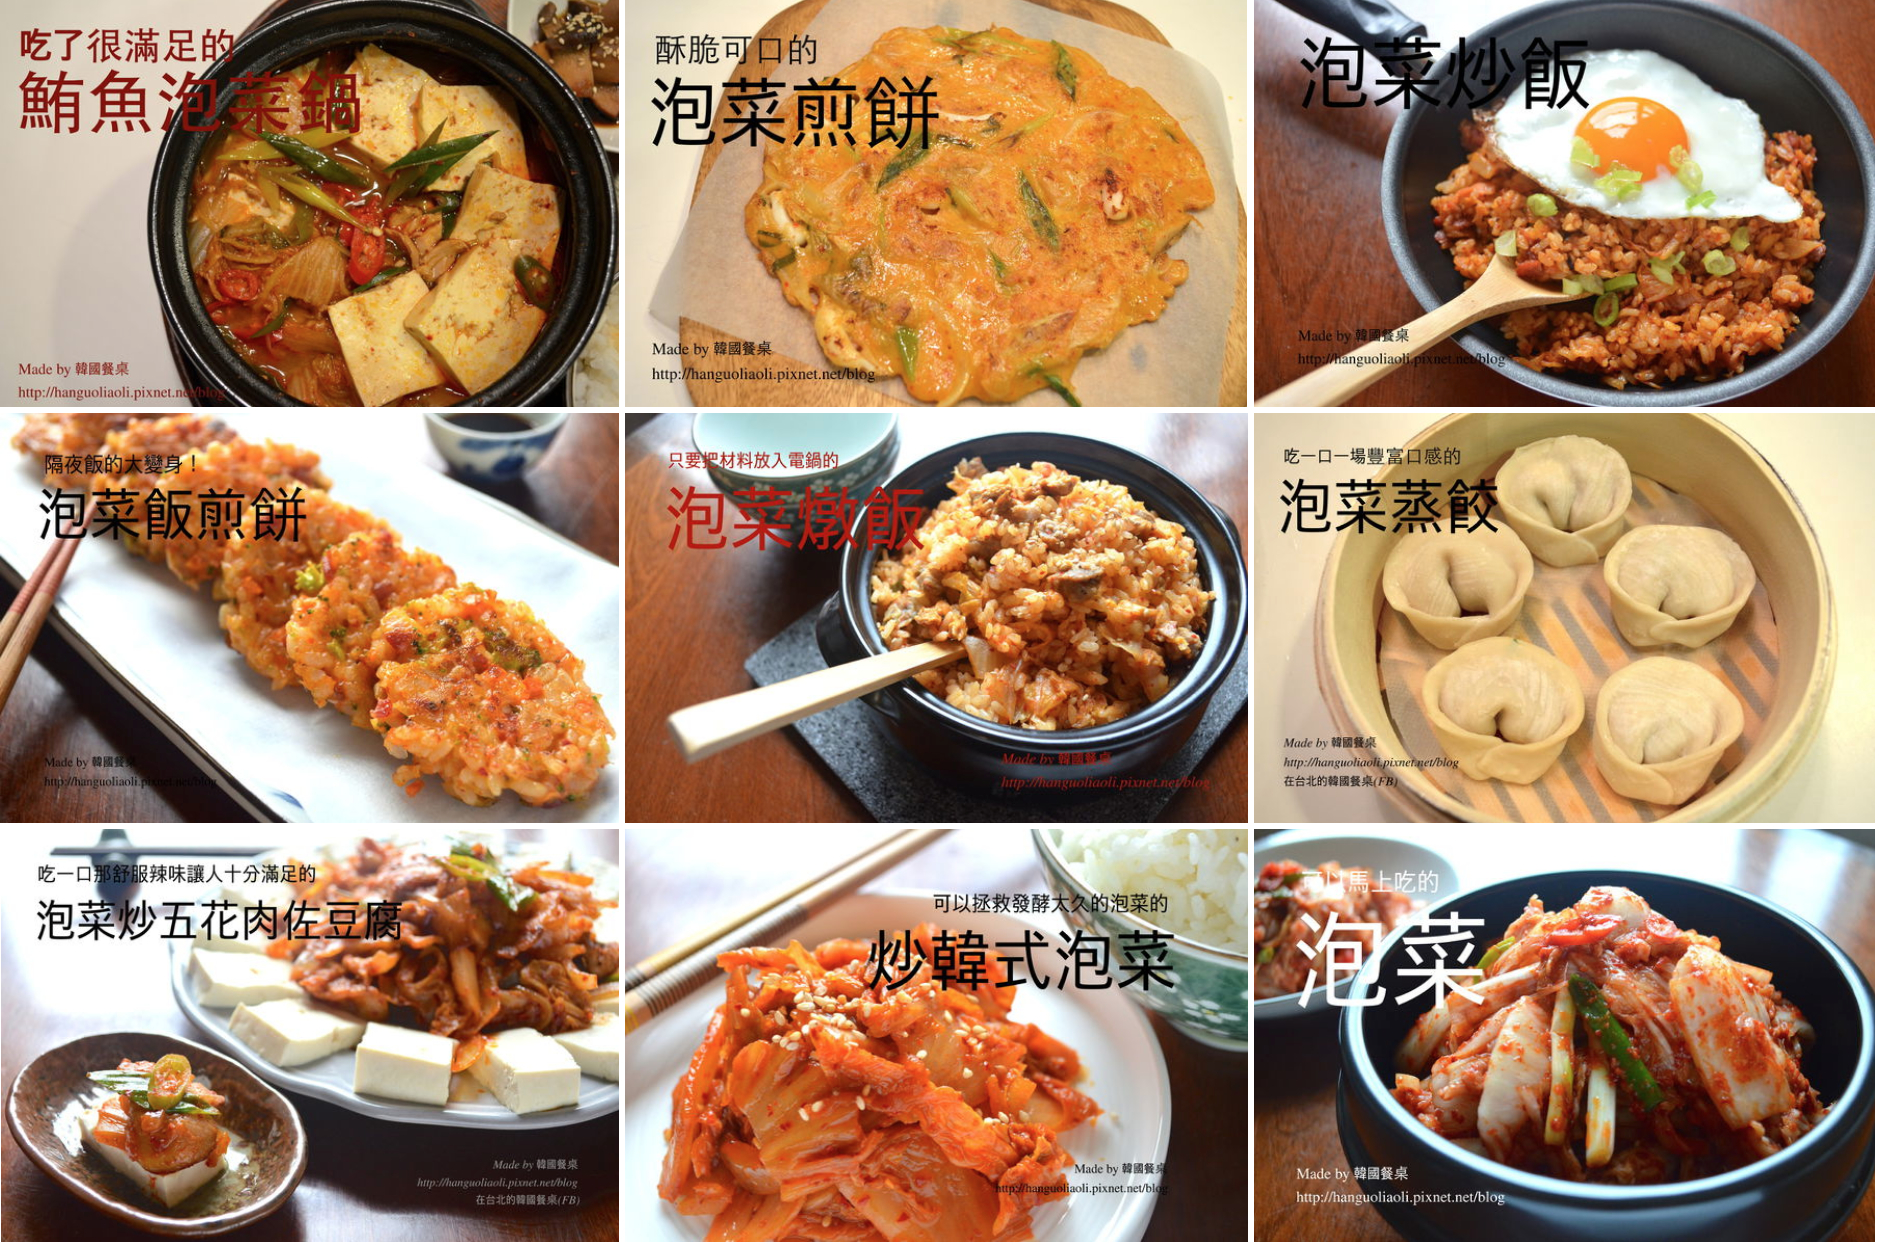 「用泡菜做的韓國菜食譜集」